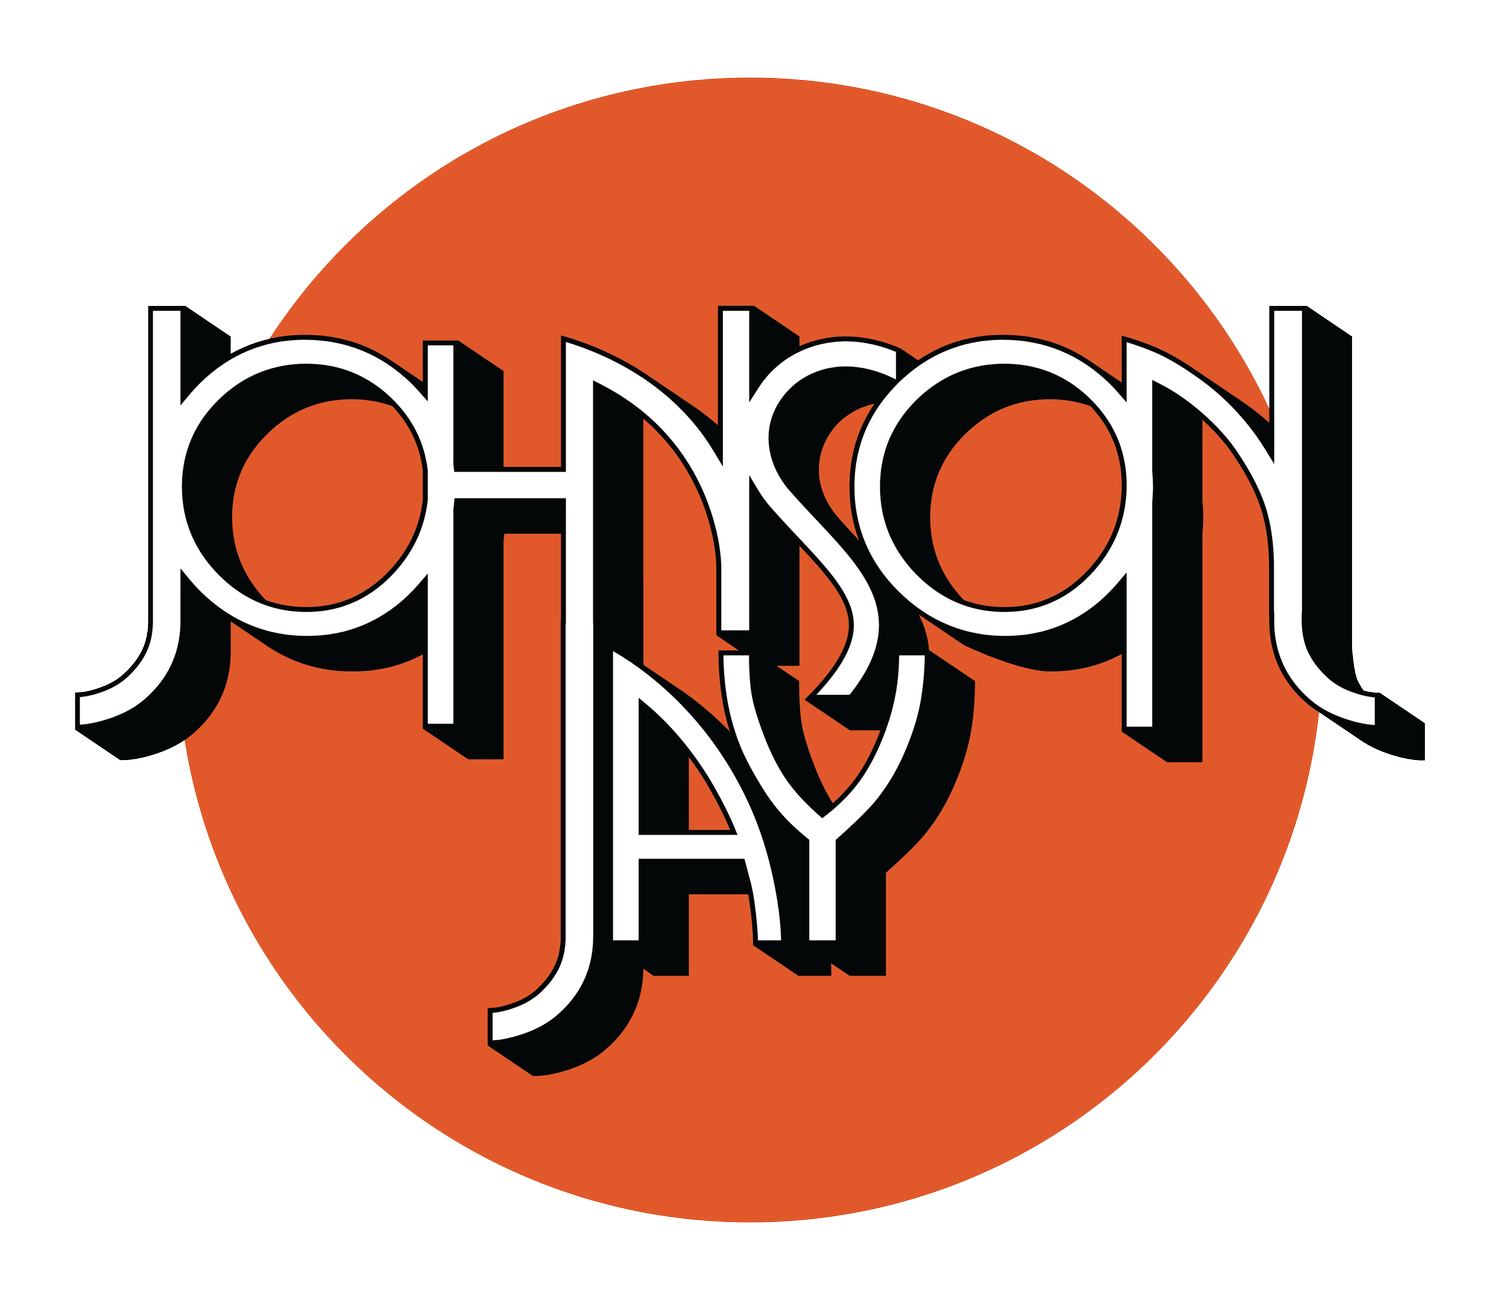 Johnson Jay